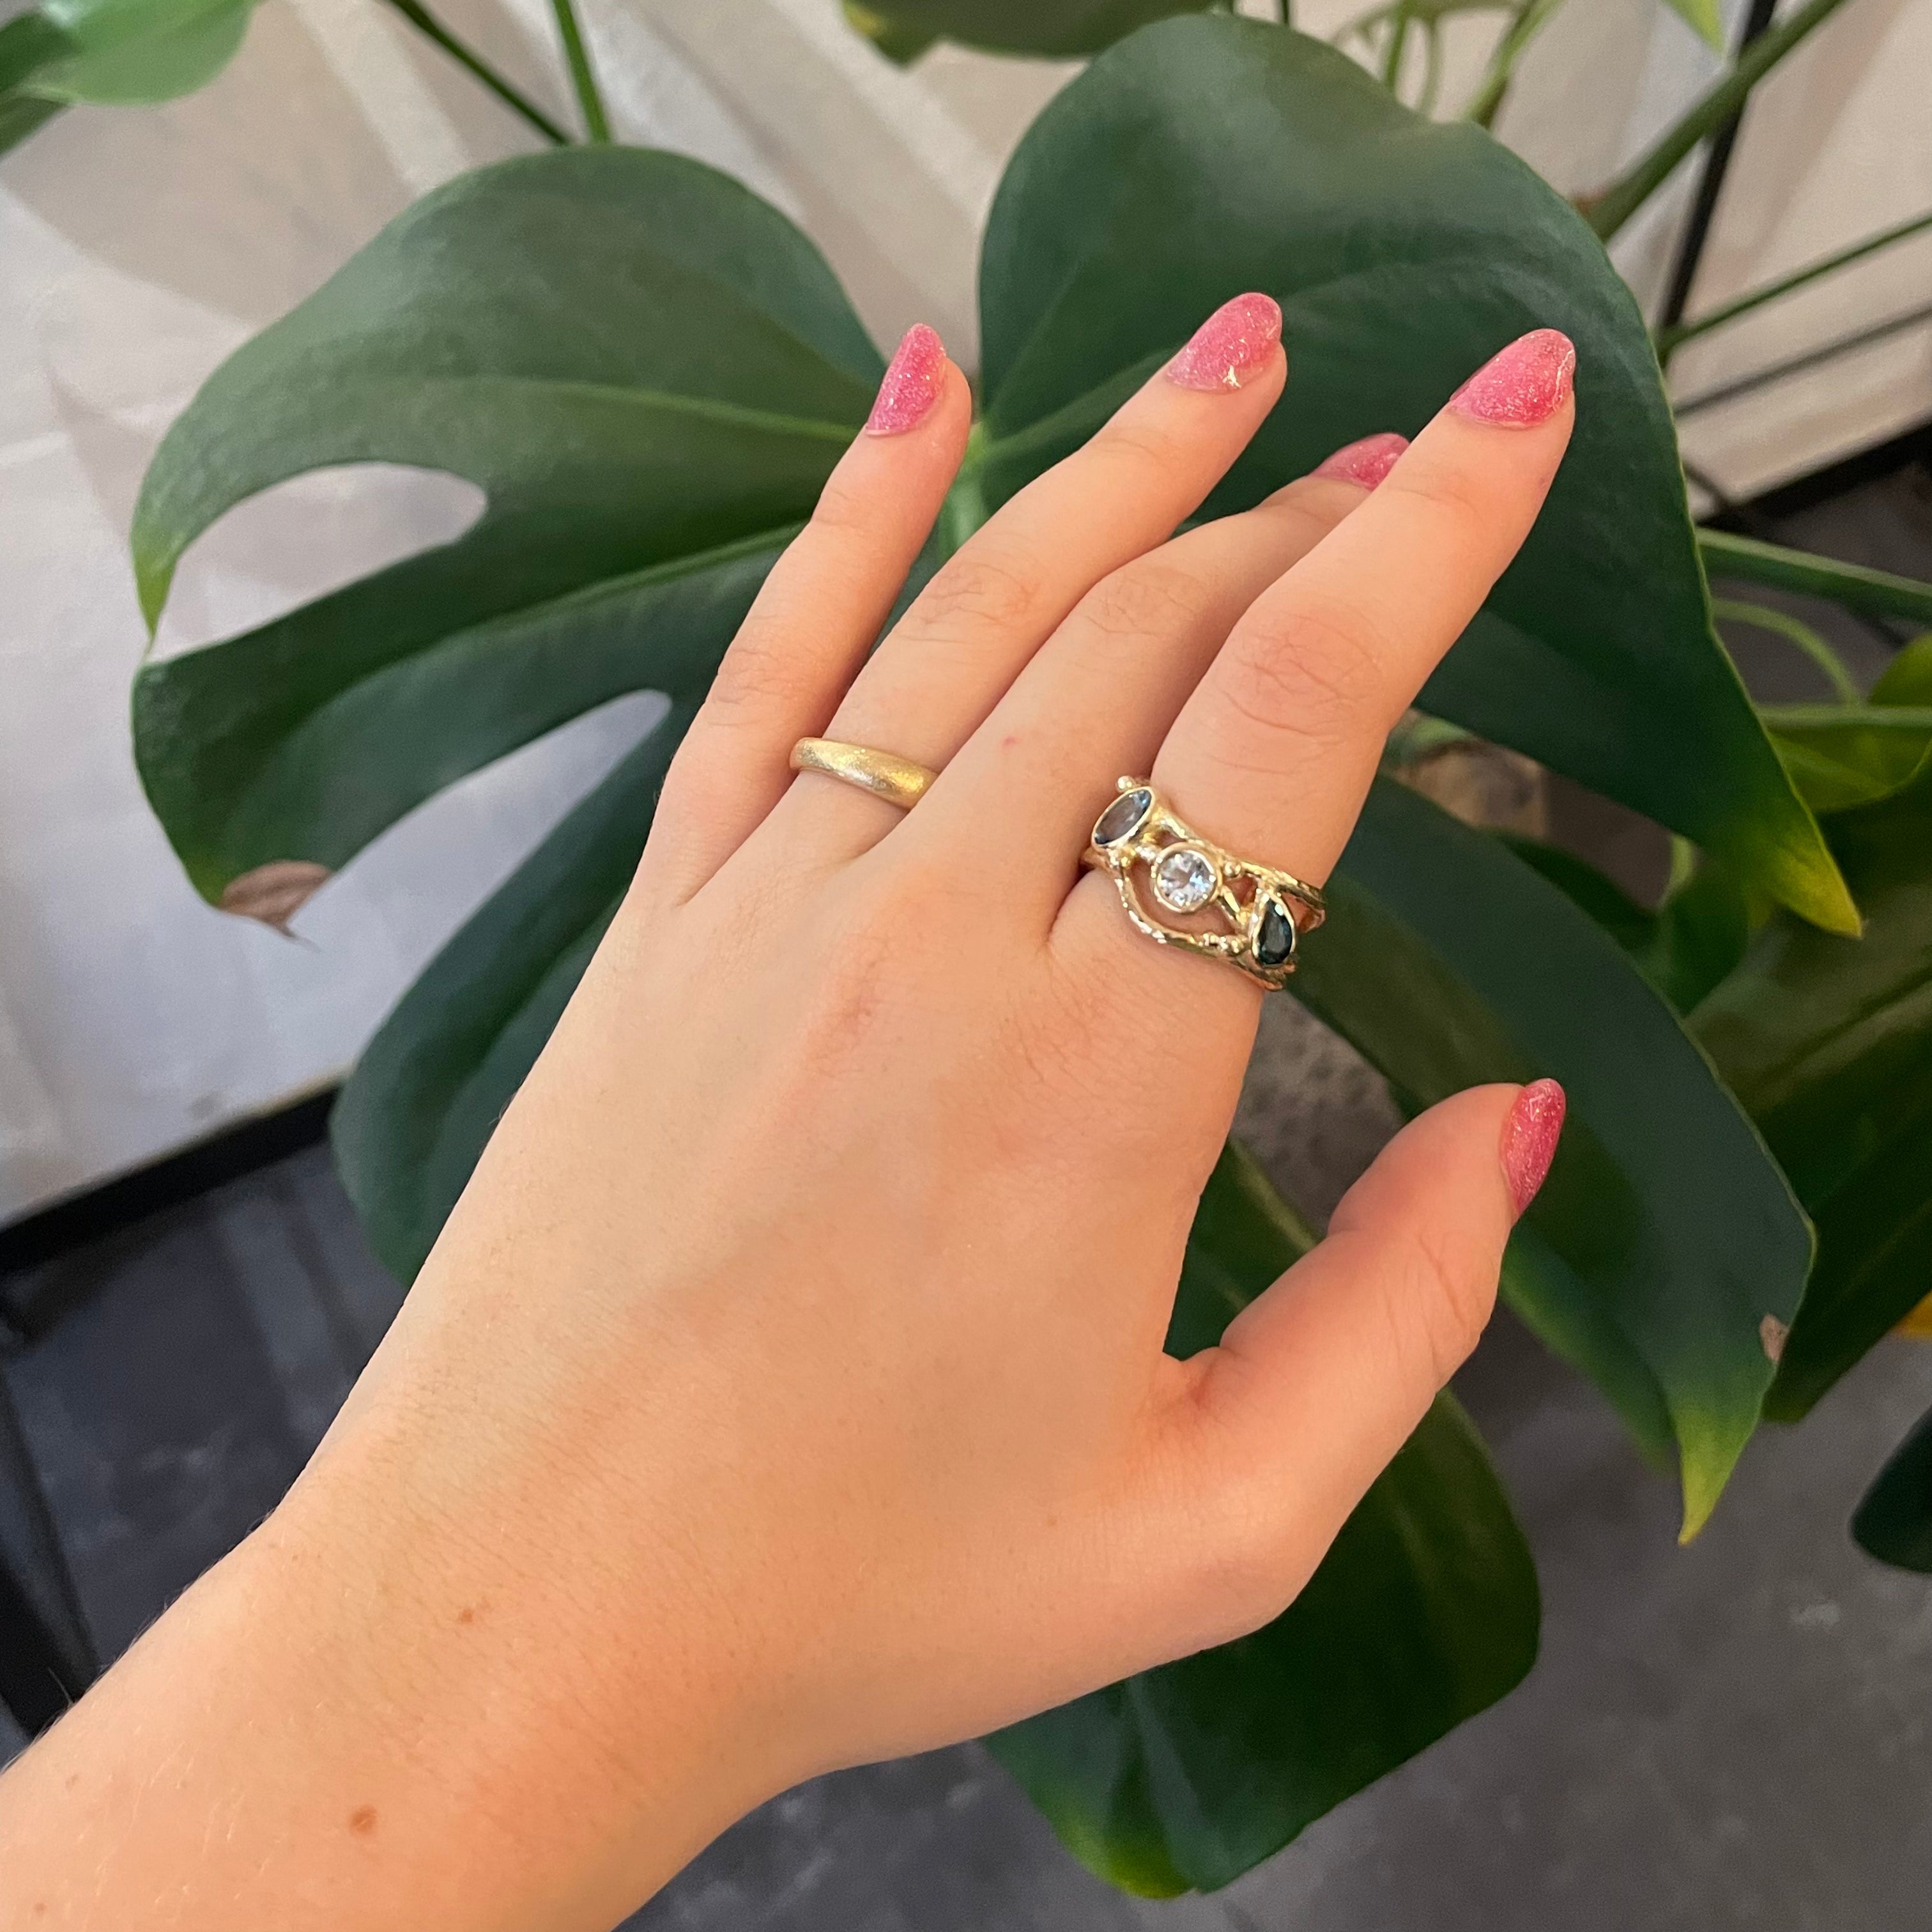 2, Smuk unika ring skabt med smuk lyseblå safir, samt smukke turmaliner der giver et elegant og legende look på ringen.  En fantastisk ring der kan bærer både til hverdag og til fest.